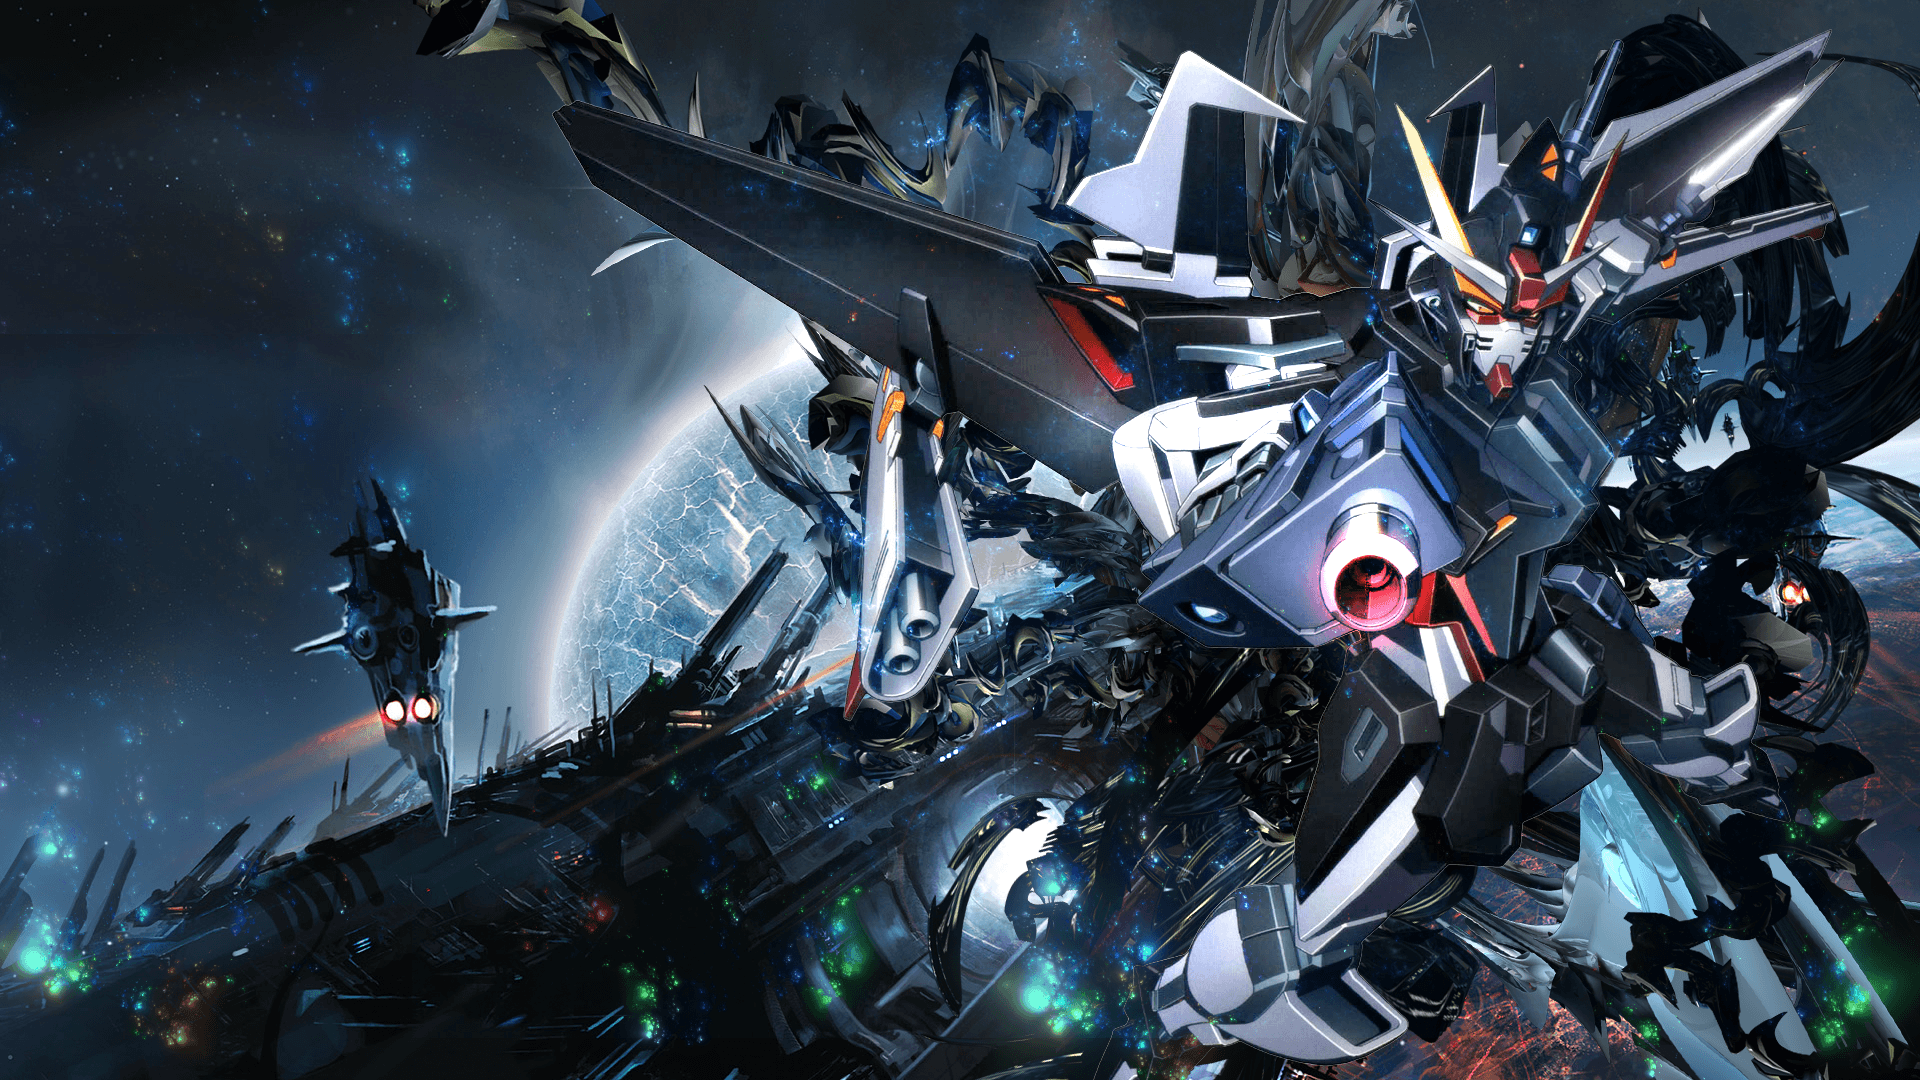 Gundam Full HD Wallpaper and Background Imagex1080